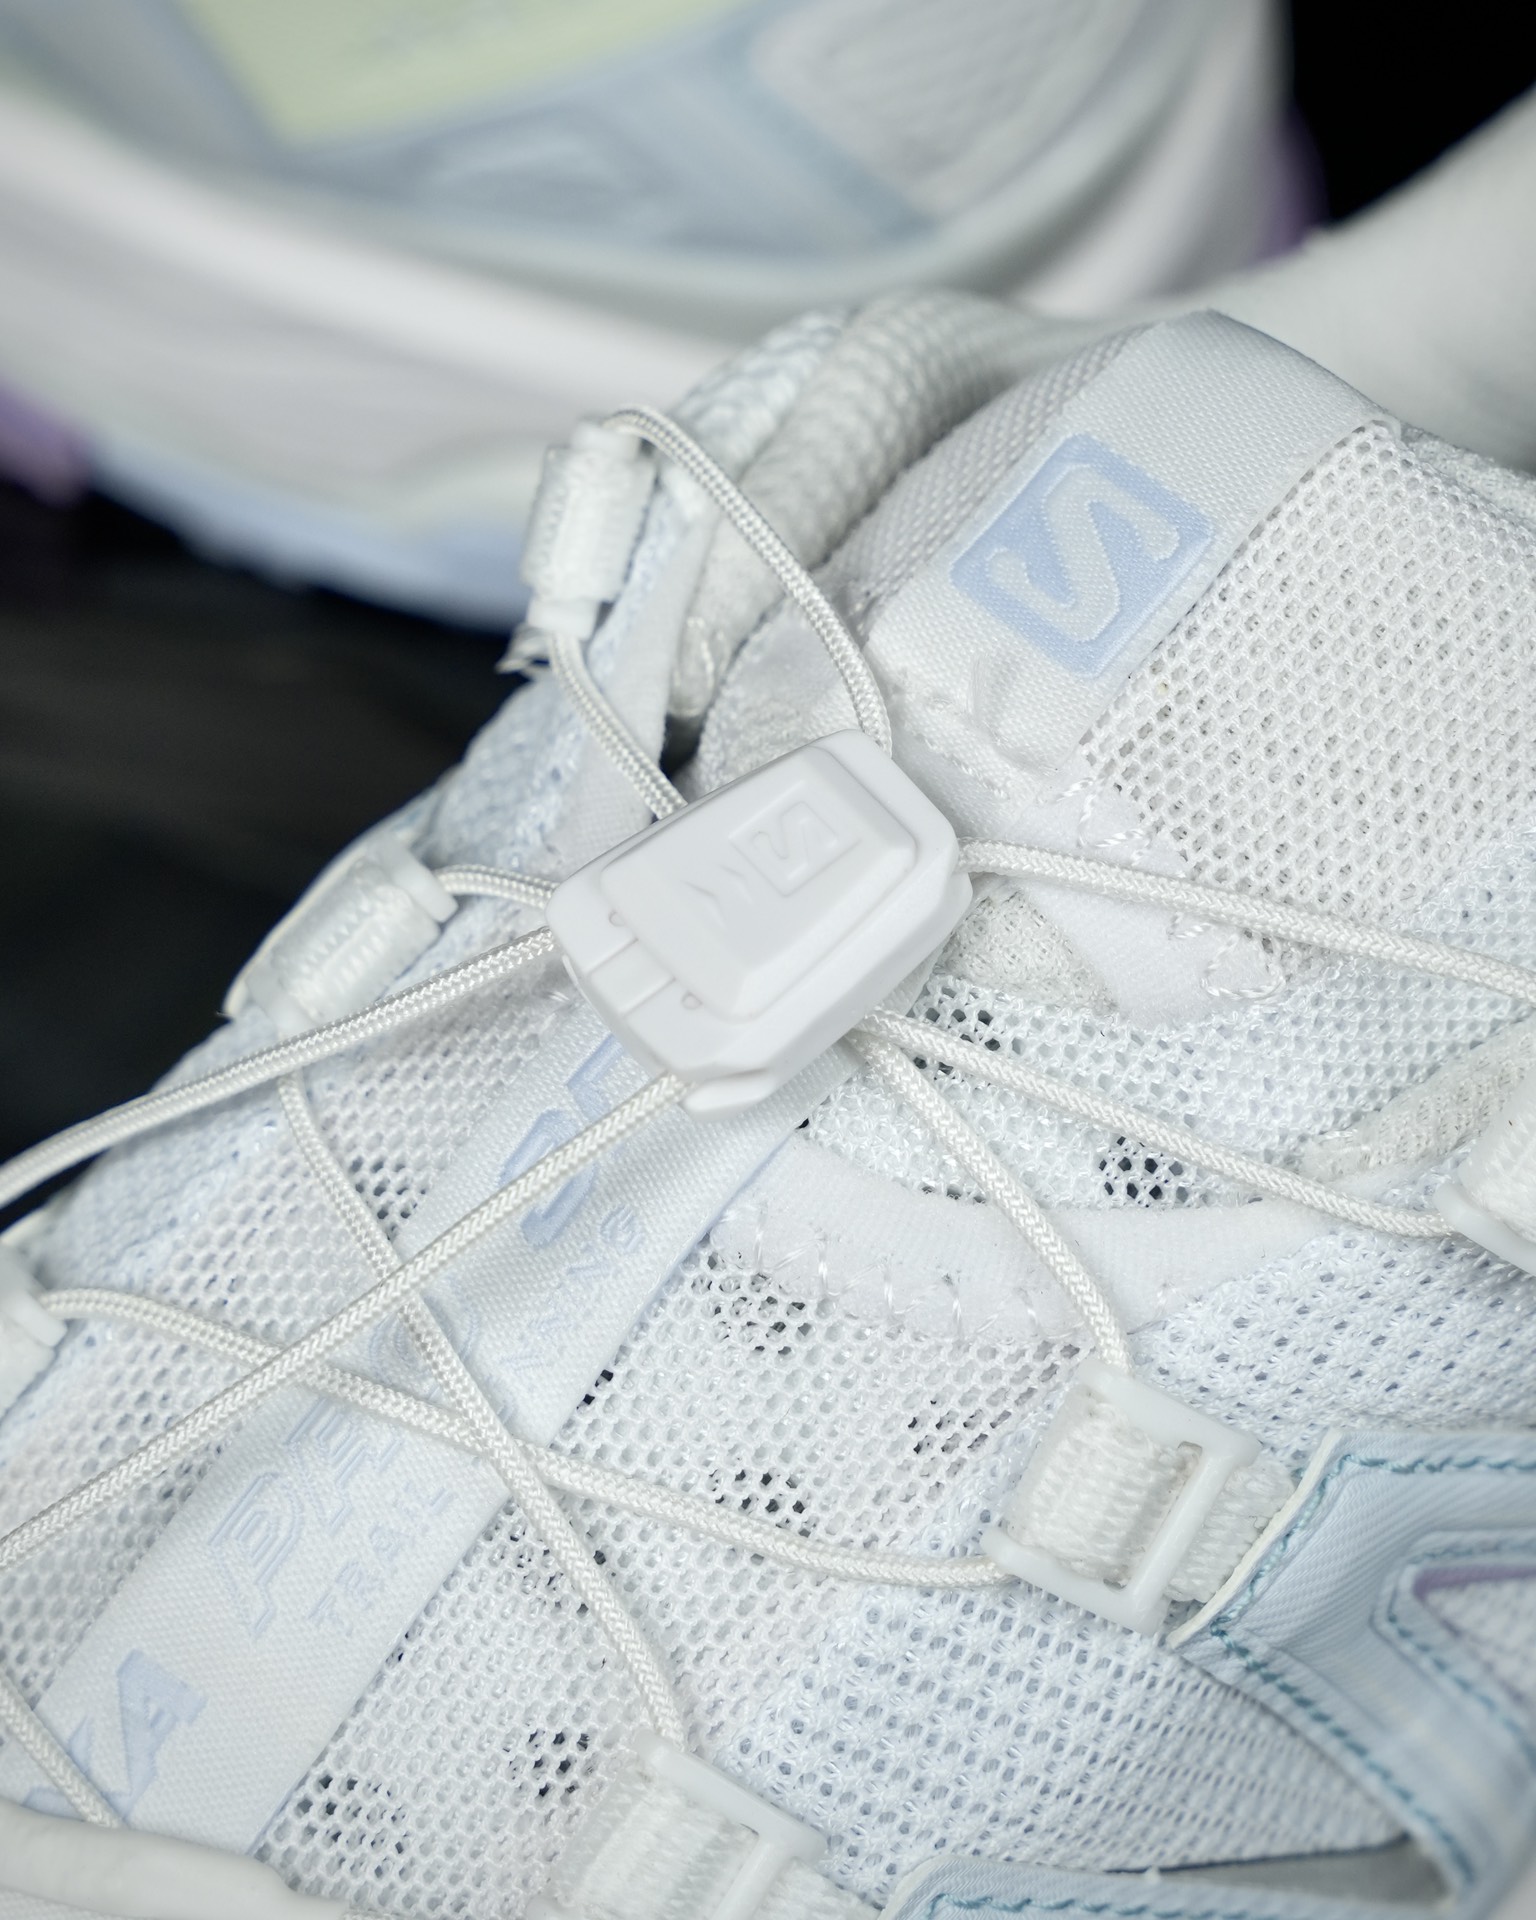 纯原SalomonXAPro3D萨洛蒙复古机能潮流休闲跑鞋全新订单出货UP团队监工打造原鞋原数据纸板打造